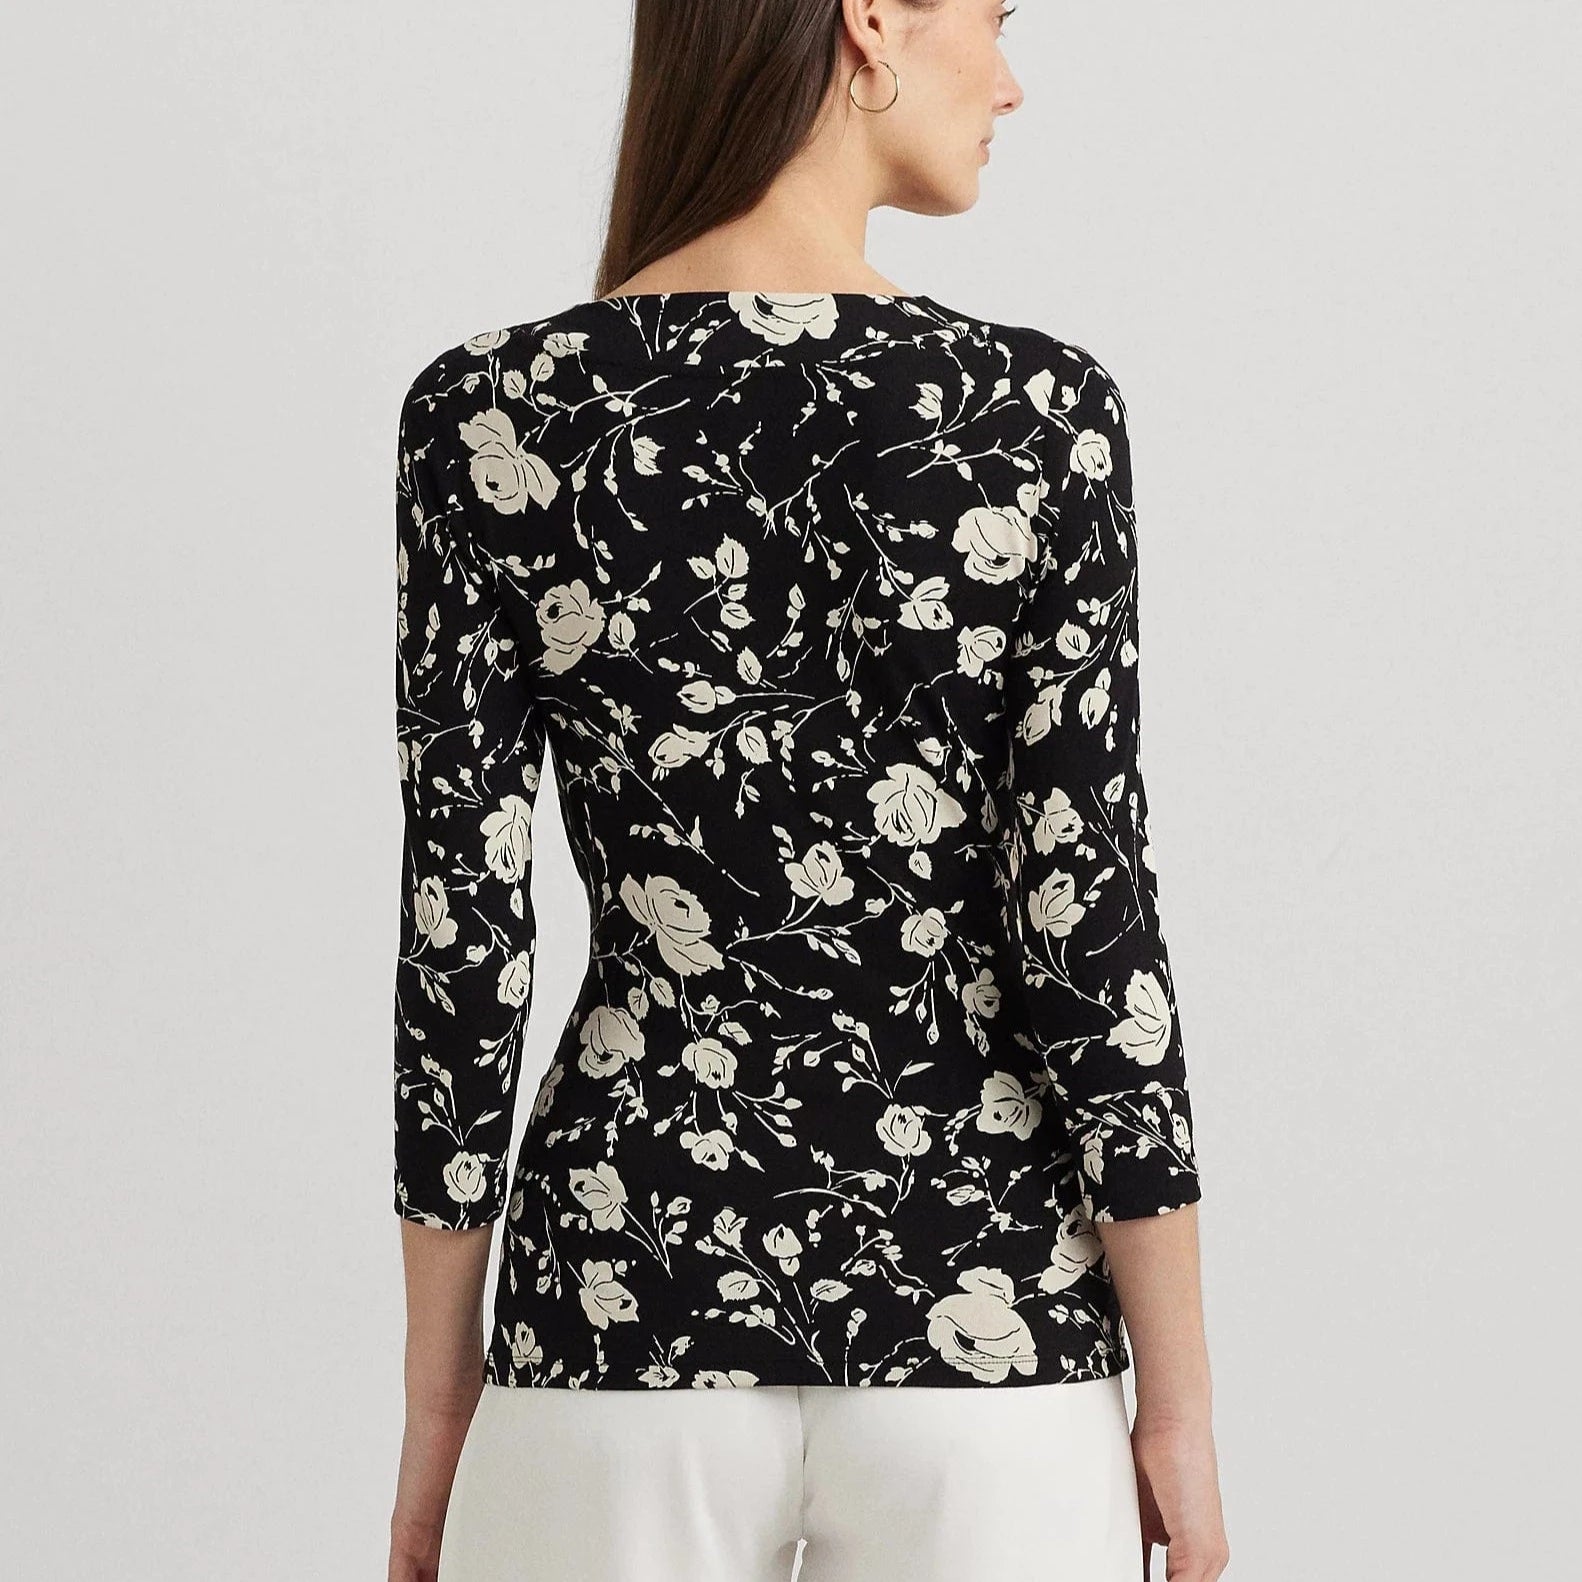 Lauren Ralph Lauren Floral Surplice Stretch Jersey Top in Black/Cream